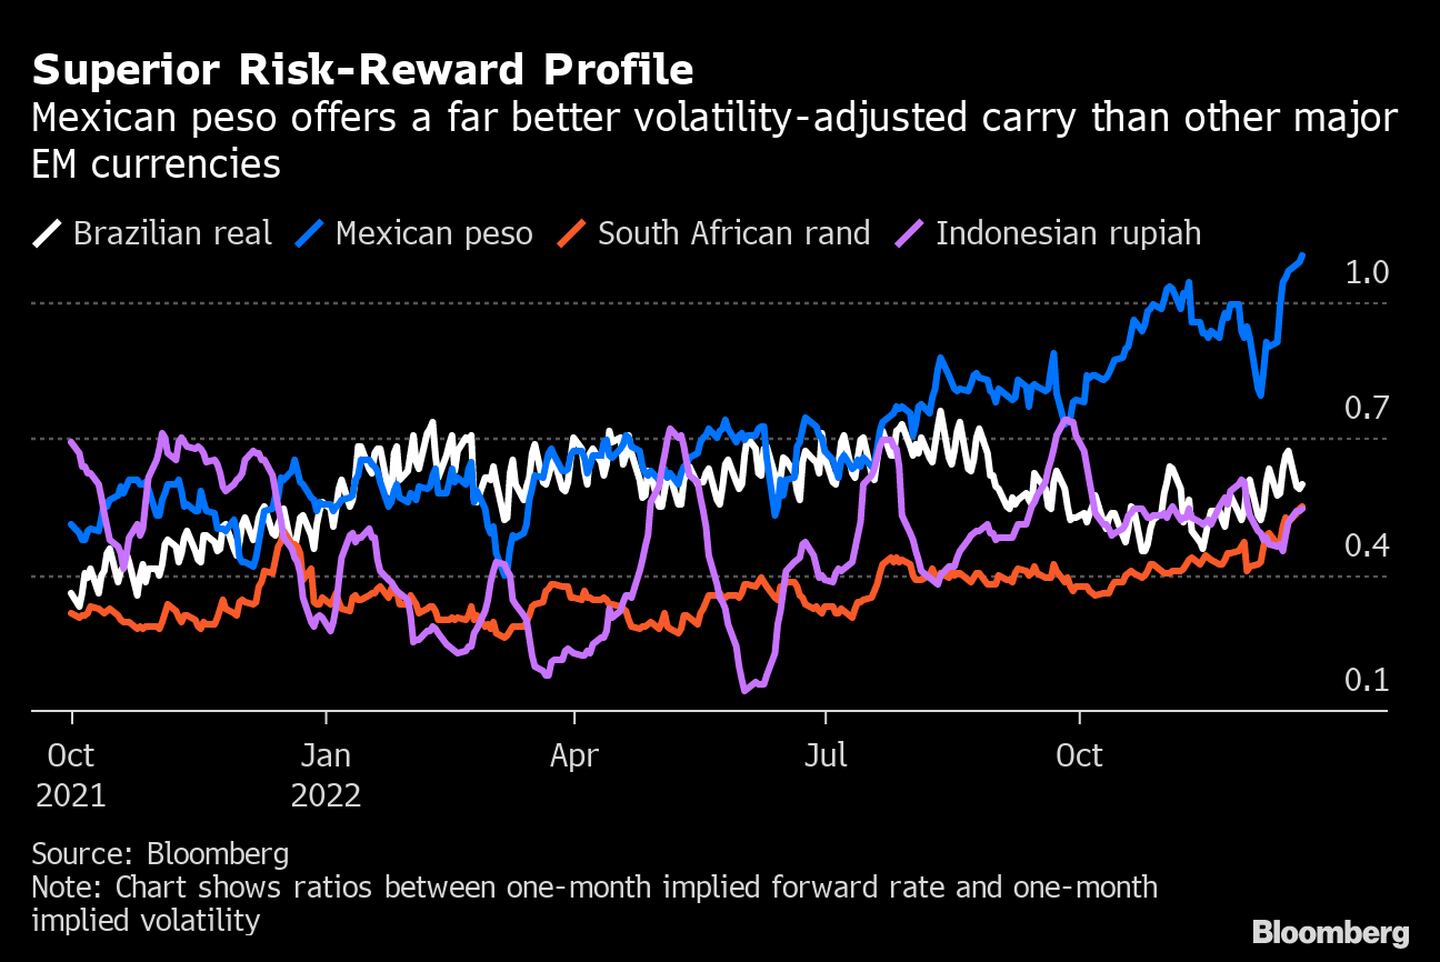 El peso mexicano ofrece un carry trade ajustado por volatilidad mucho mejor que otras monedas de mercados emergentes. dfd